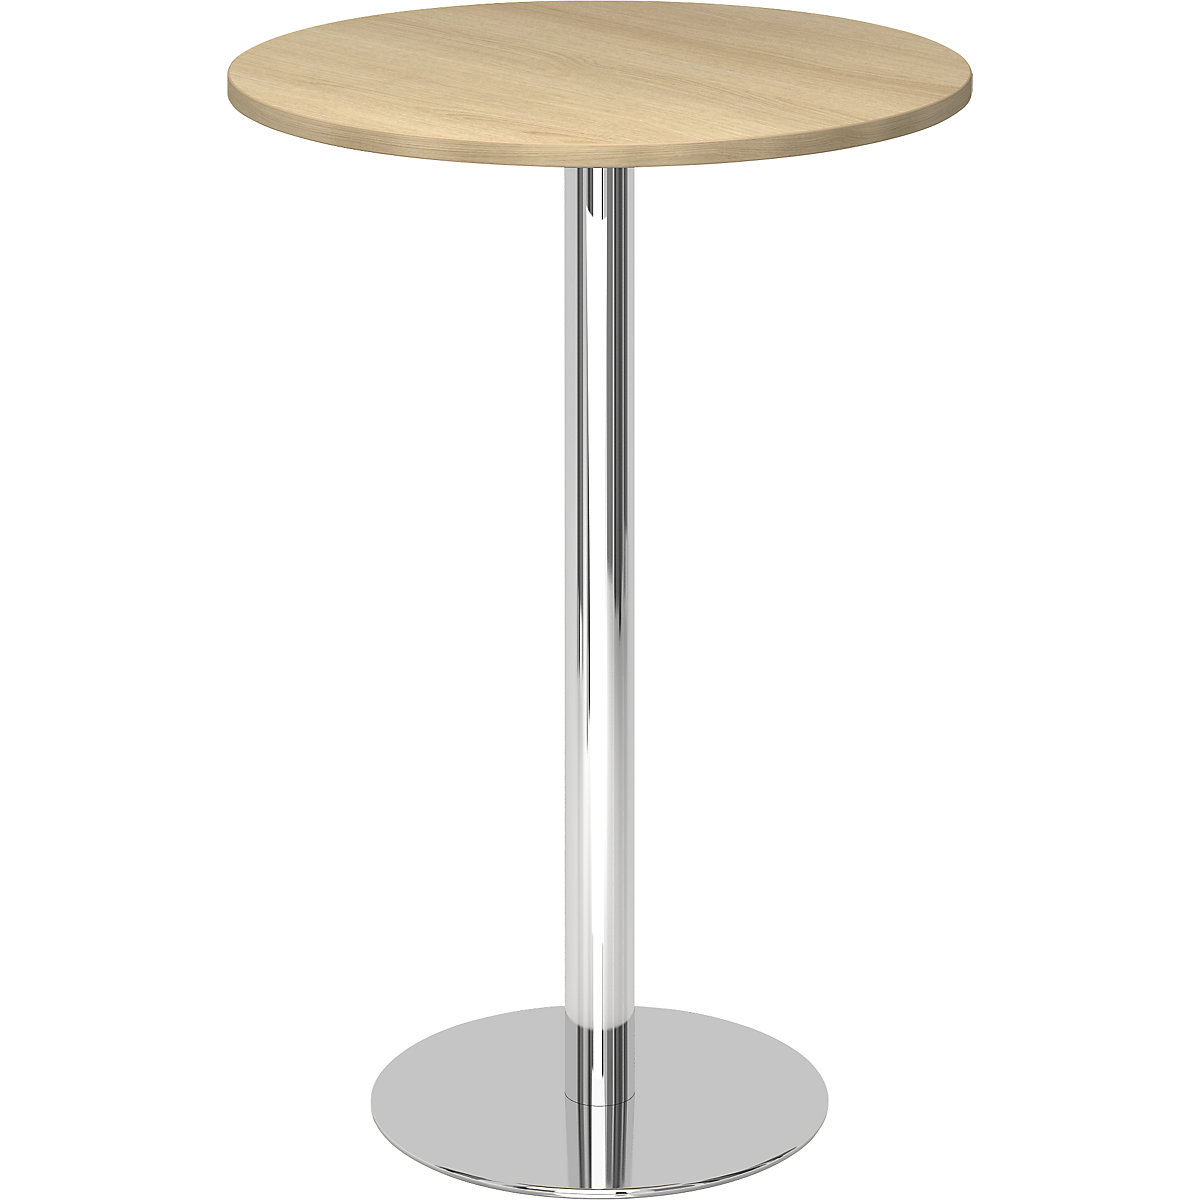 Állóasztal, Ø 800 mm, 1116 mm magas, krómozott váz, tölgyfa-dekor asztallap